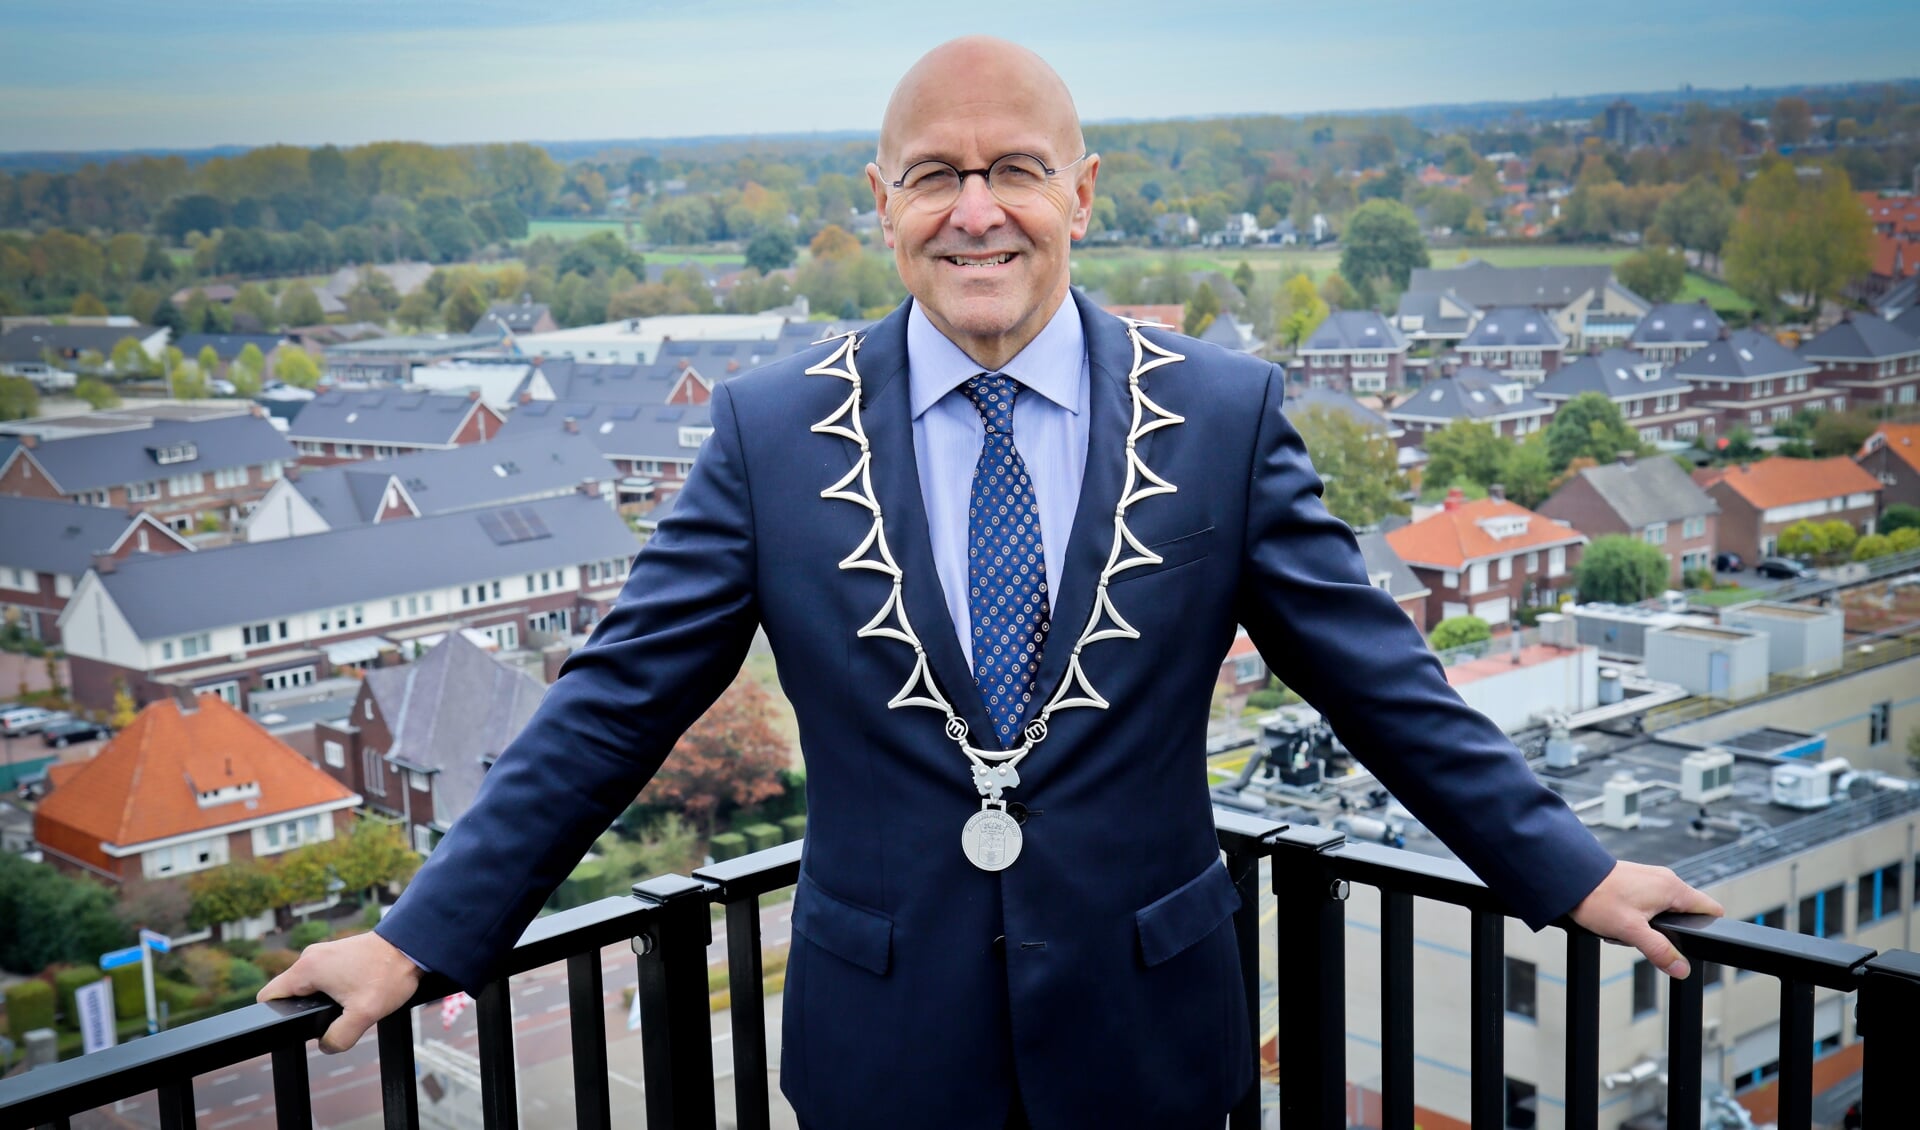 Burgemeester Van Rooij is in actie gekomen, hij wil niet dat jongeren verder afglijden en in het criminele circuit terecht komen.